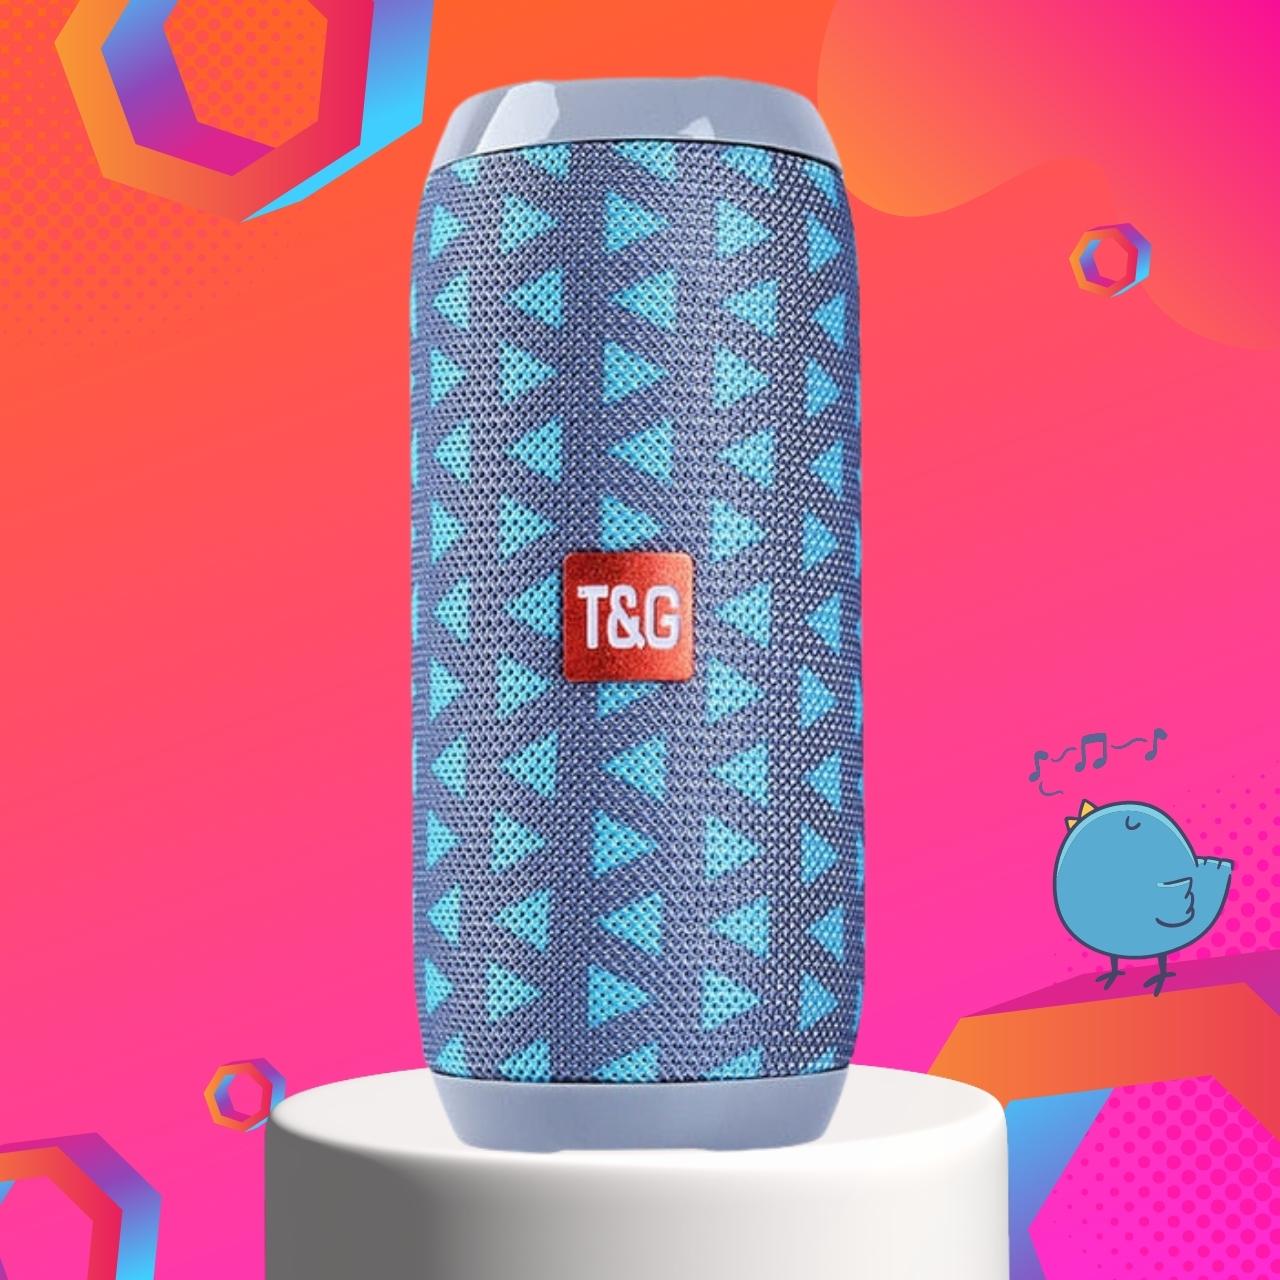 TG117 Speaker 